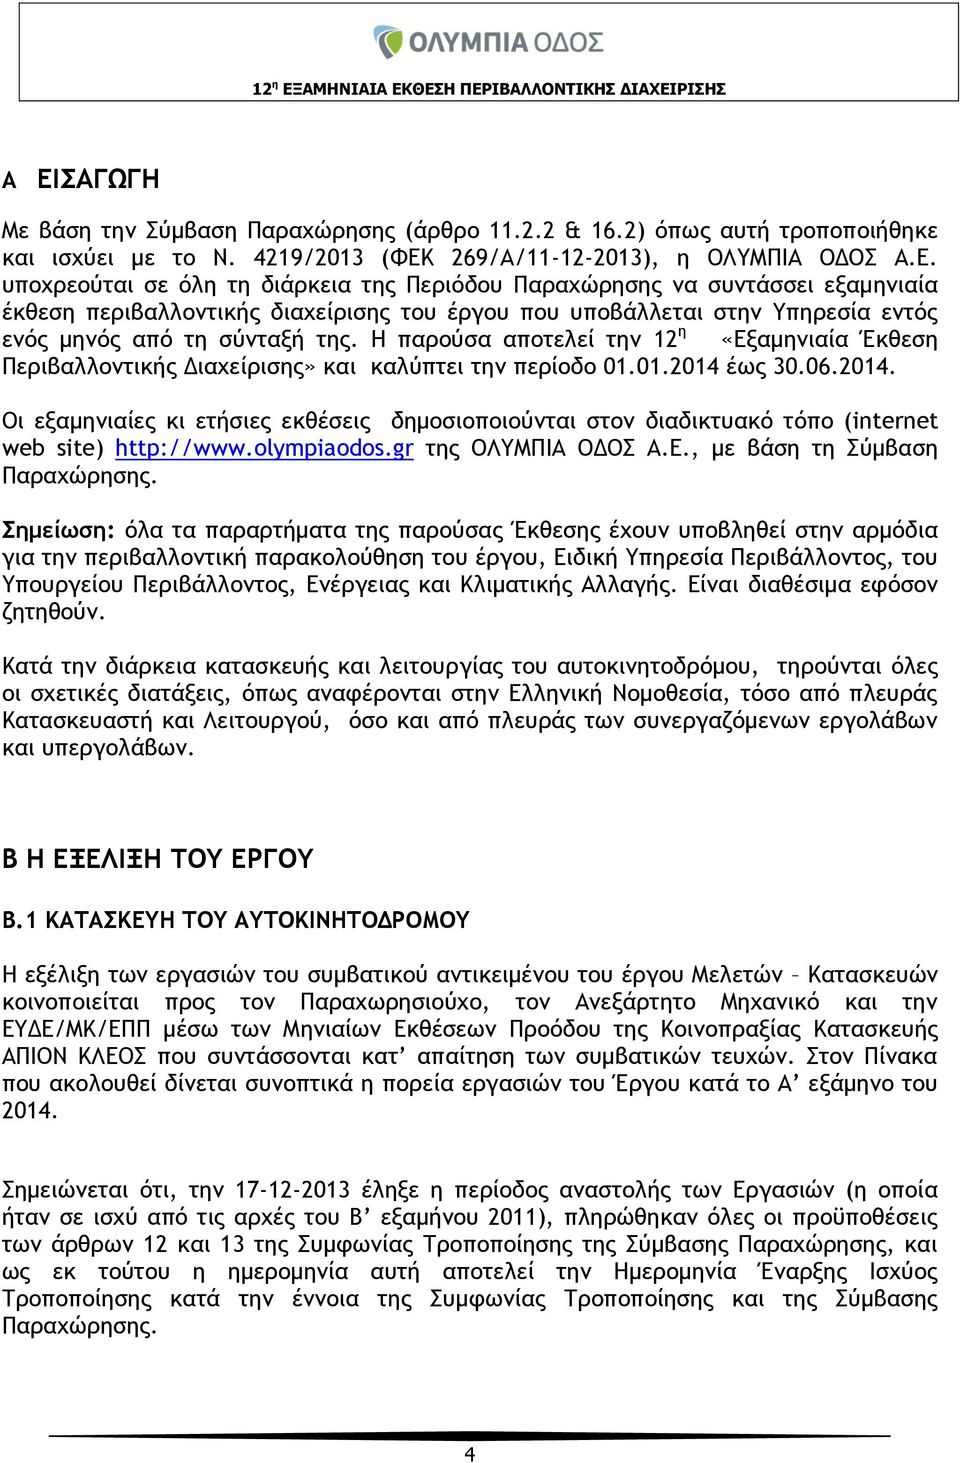 έως 30.06.2014. Οι εξαμηνιαίες κι ετήσιες εκθέσεις δημοσιοποιούνται στον διαδικτυακό τόπο (internet web site) http://www.olympiaodos.gr της ΟΛΥΜΠΙΑ ΟΔΟΣ Α.Ε., με βάση τη Σύμβαση Παραχώρησης.